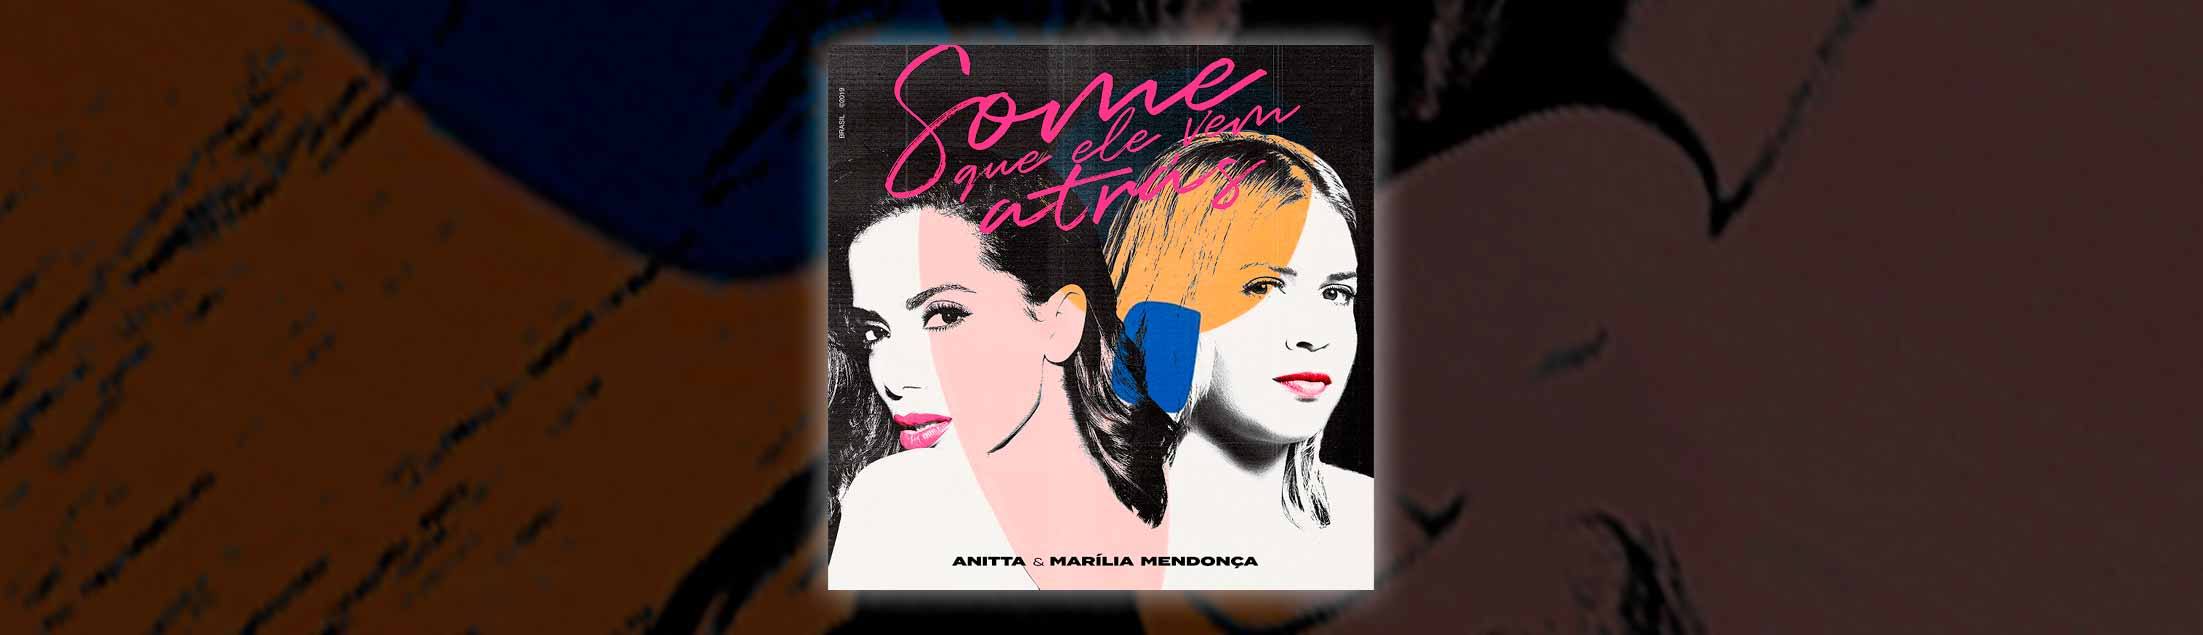 'Some Que Ele Vem Atrás': Anitta libera o clipe da parceria ao vivo com Marília Mendonça